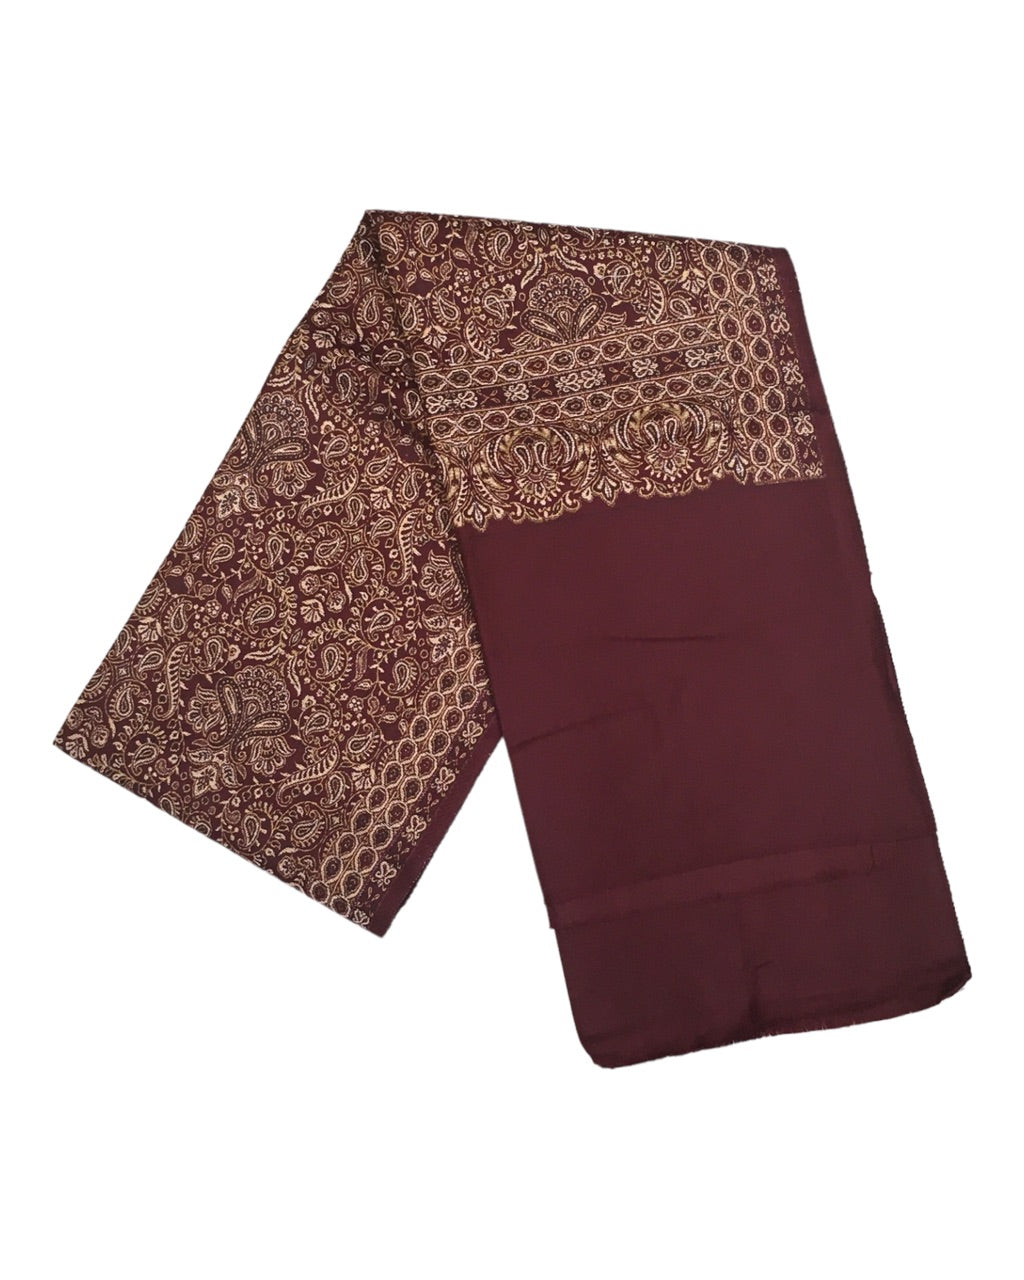 Maroon - Art Wool Handloom Woven Shawl - NTC2202 KY 1022